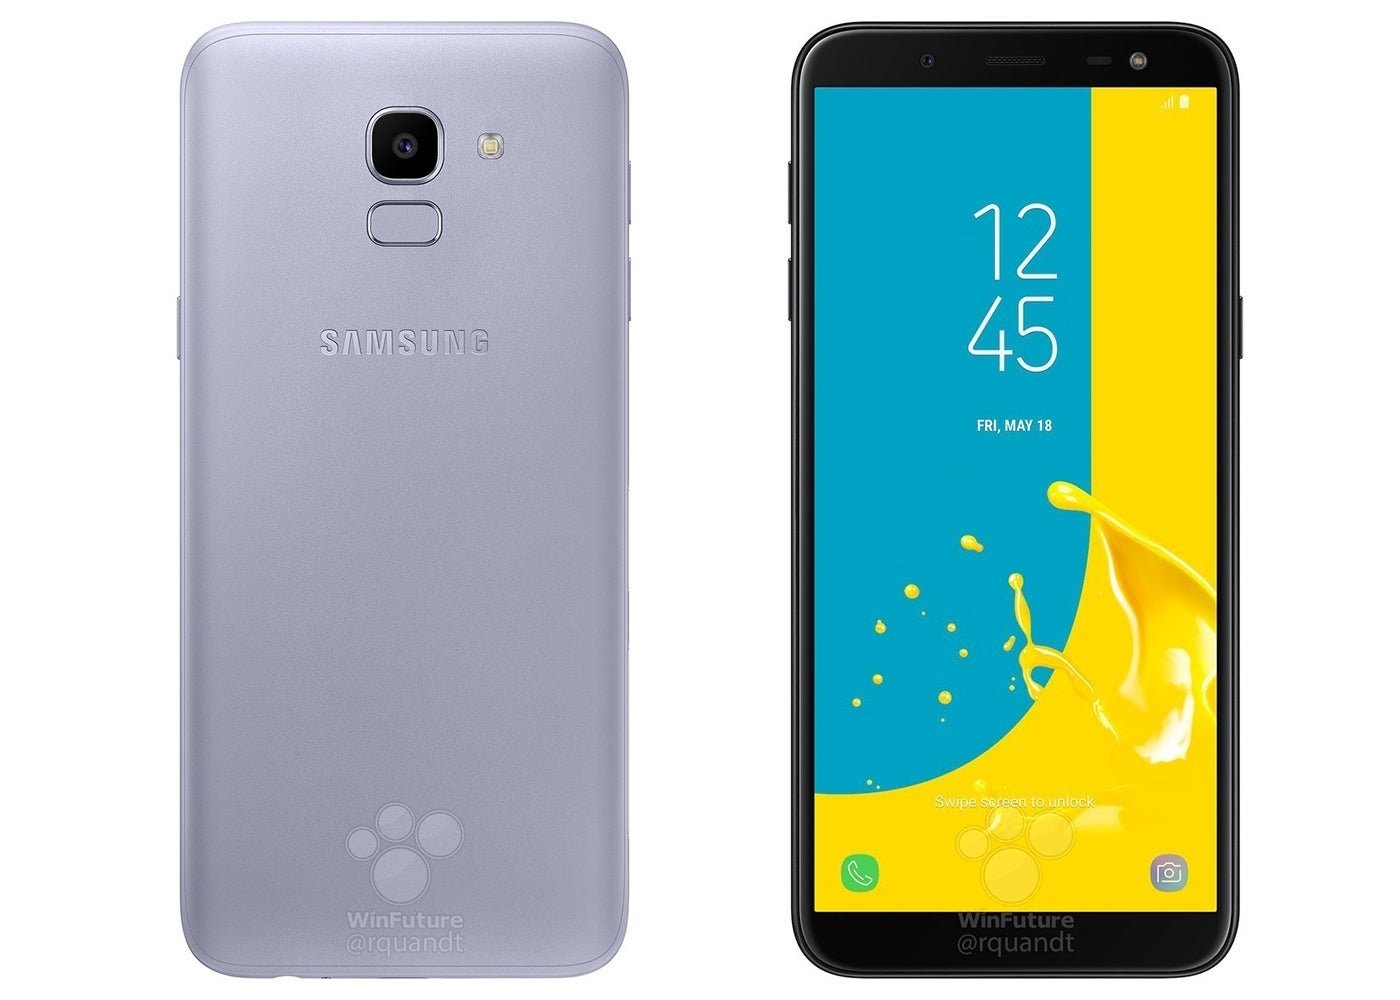 Los primeros renders oficiales del Samsung Galaxy J6 2018 desvelan su diseño al completo